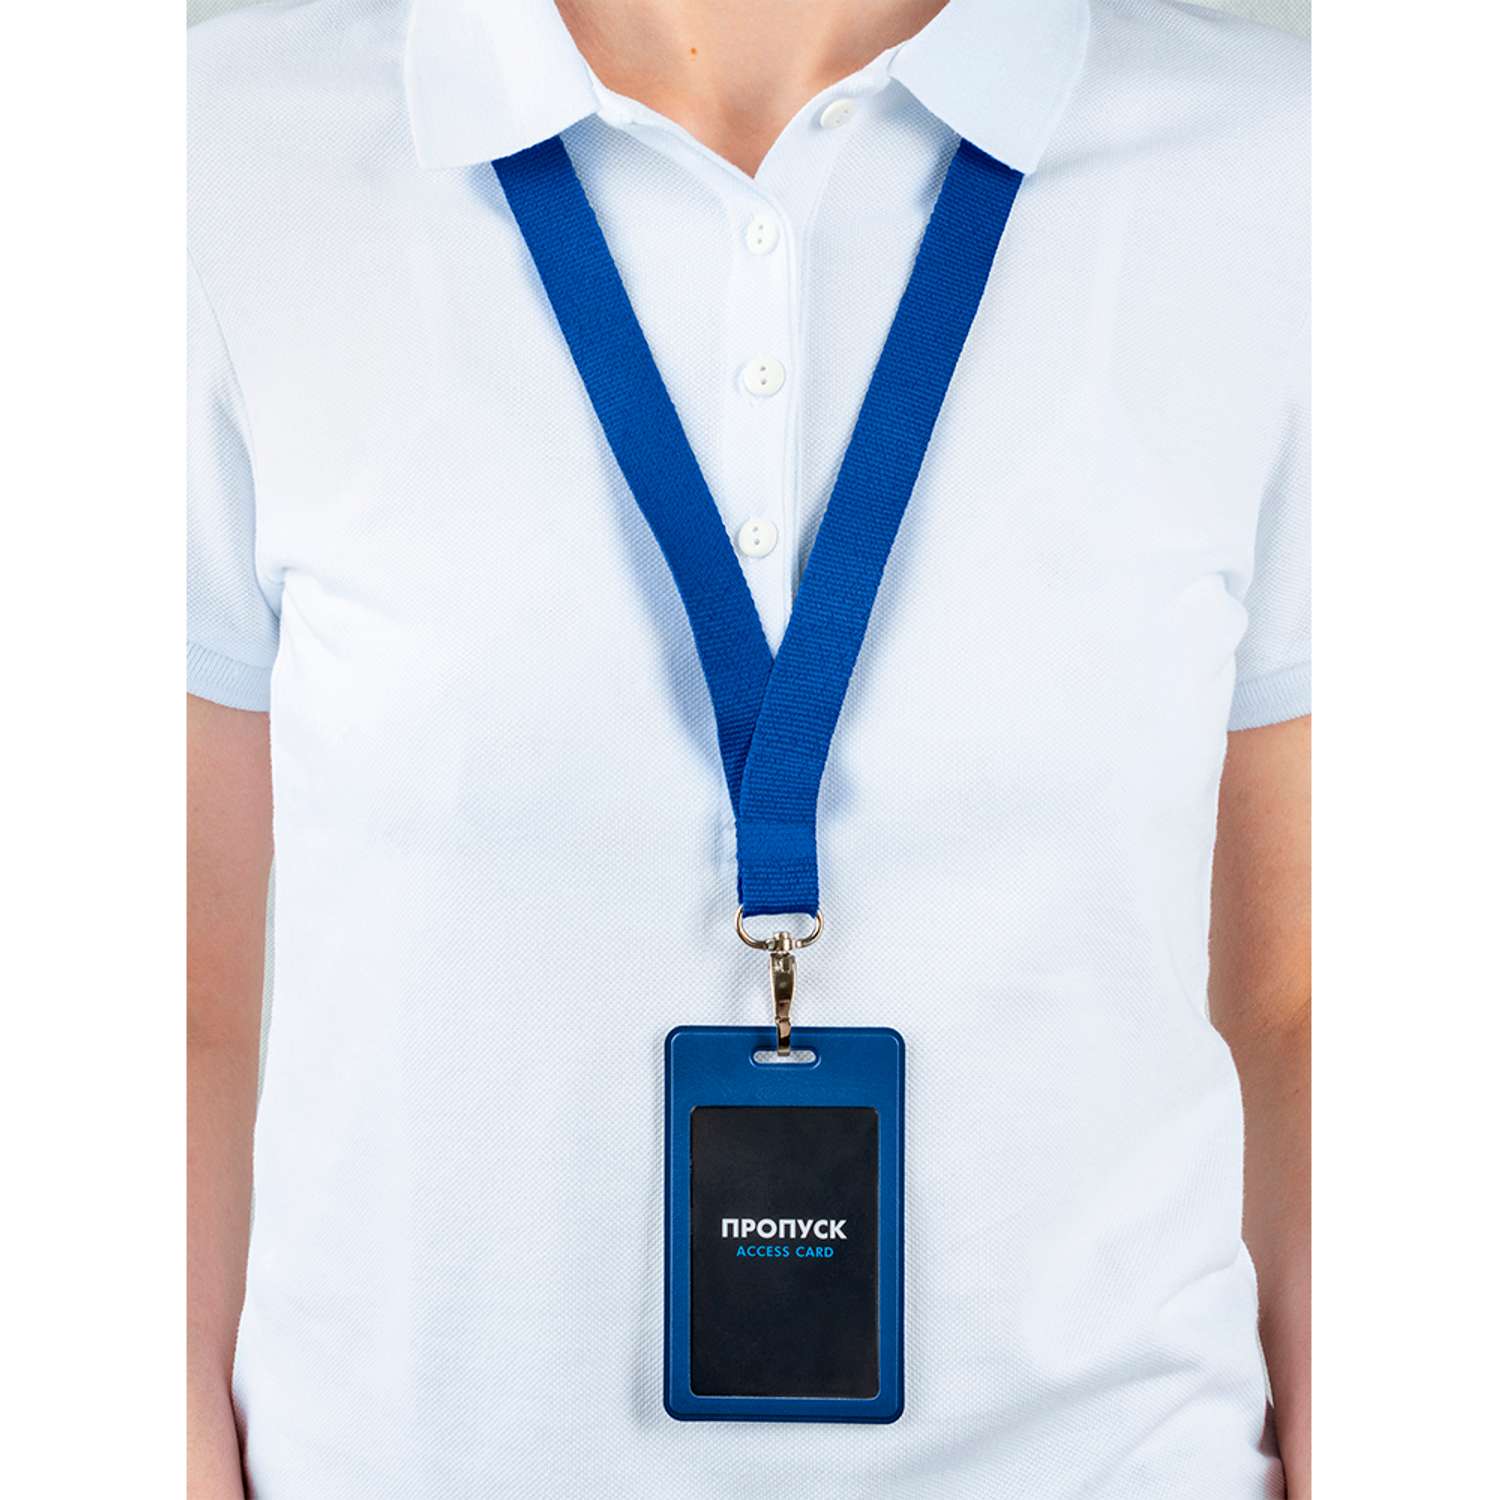 Лента с карманом для пропуска Flexpocket из экокожи цвет синий - фото 4